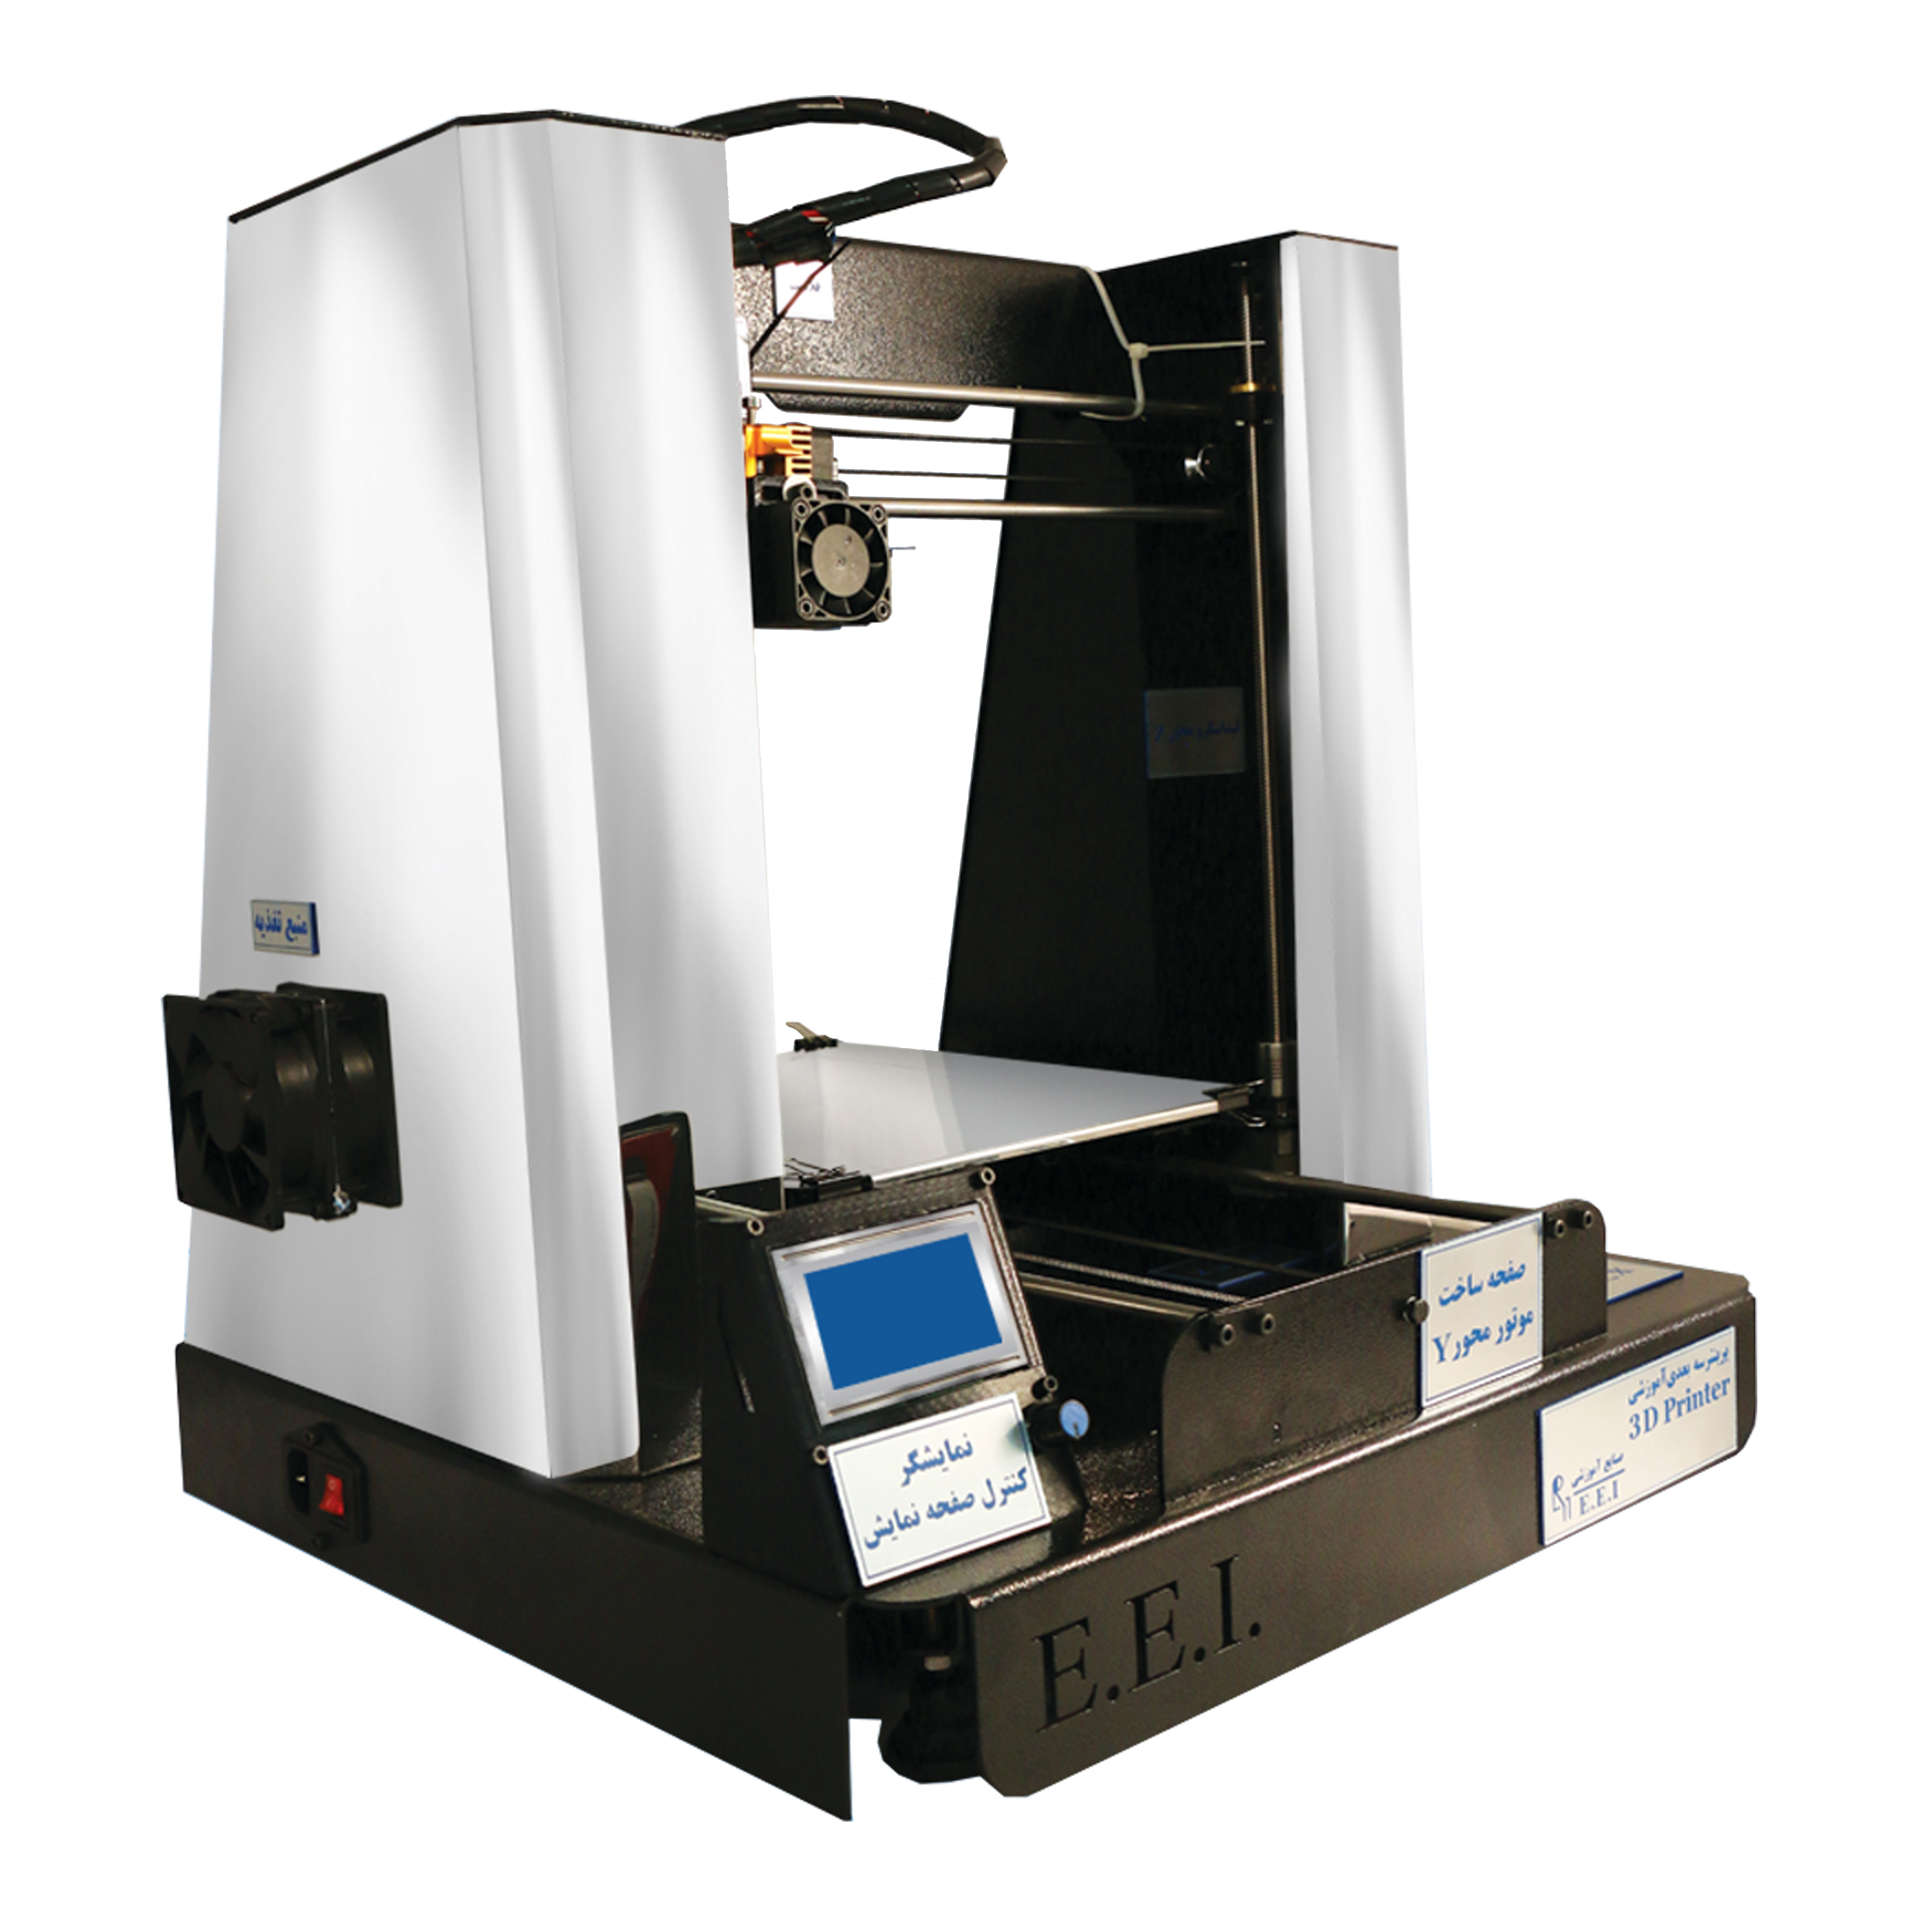 پرینتر سه بعدی صنایع آموزشی مدل EEI-226